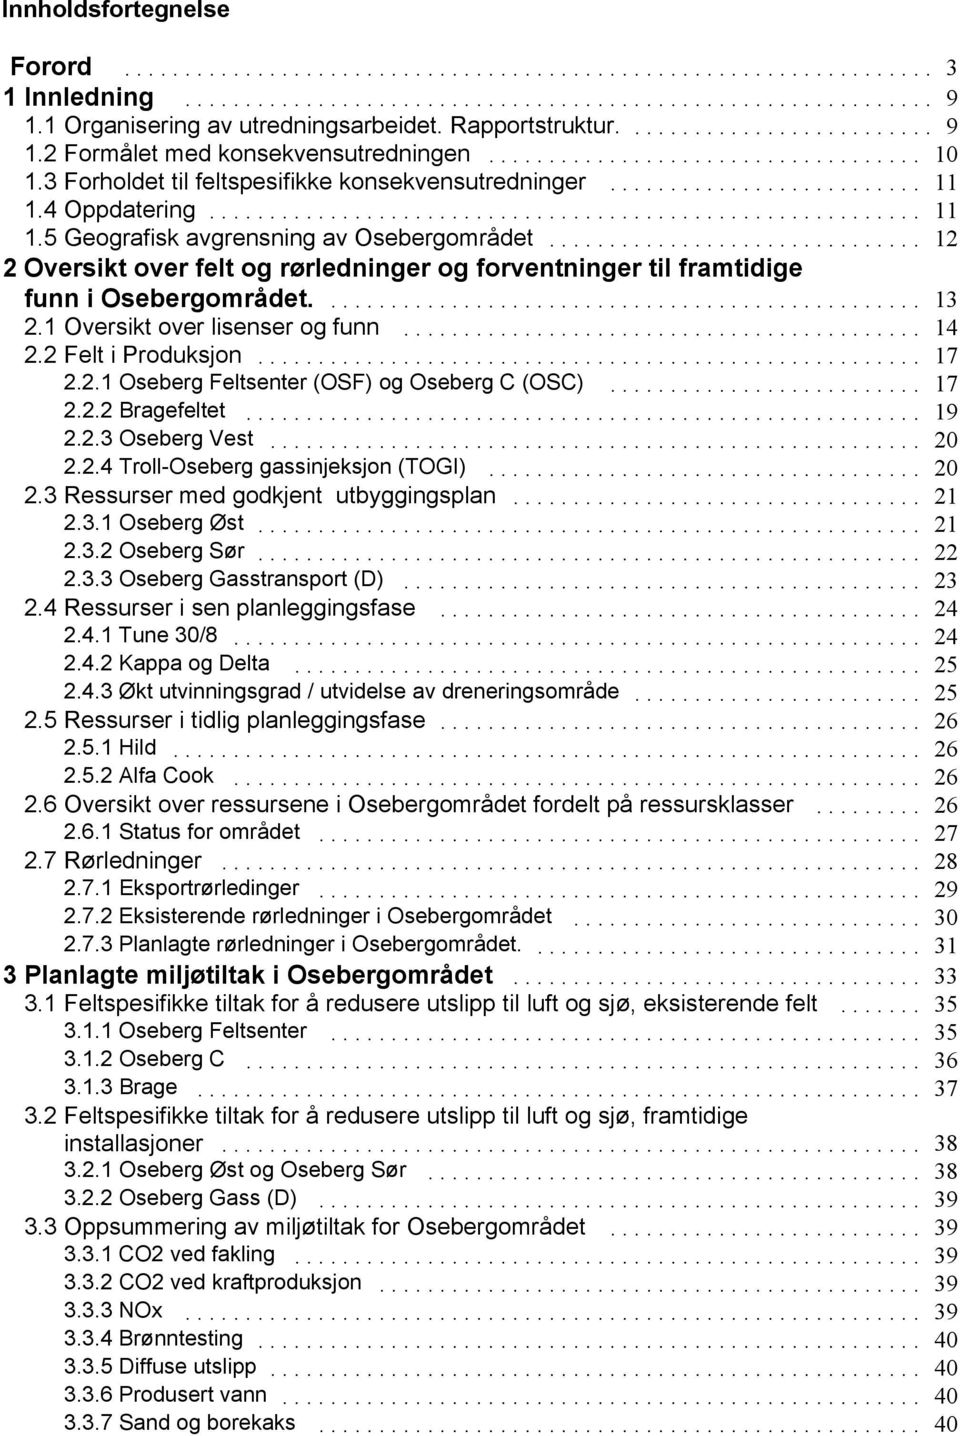 .. 12 2 Oversikt over felt og rørledninger og forventninger til framtidige funn i Osebergområdet.... 13 2.1 Oversikt over lisenser og funn... 14 2.2 Felt i Produksjon... 17 2.2.1 Oseberg Feltsenter (OSF) og Oseberg C (OSC).